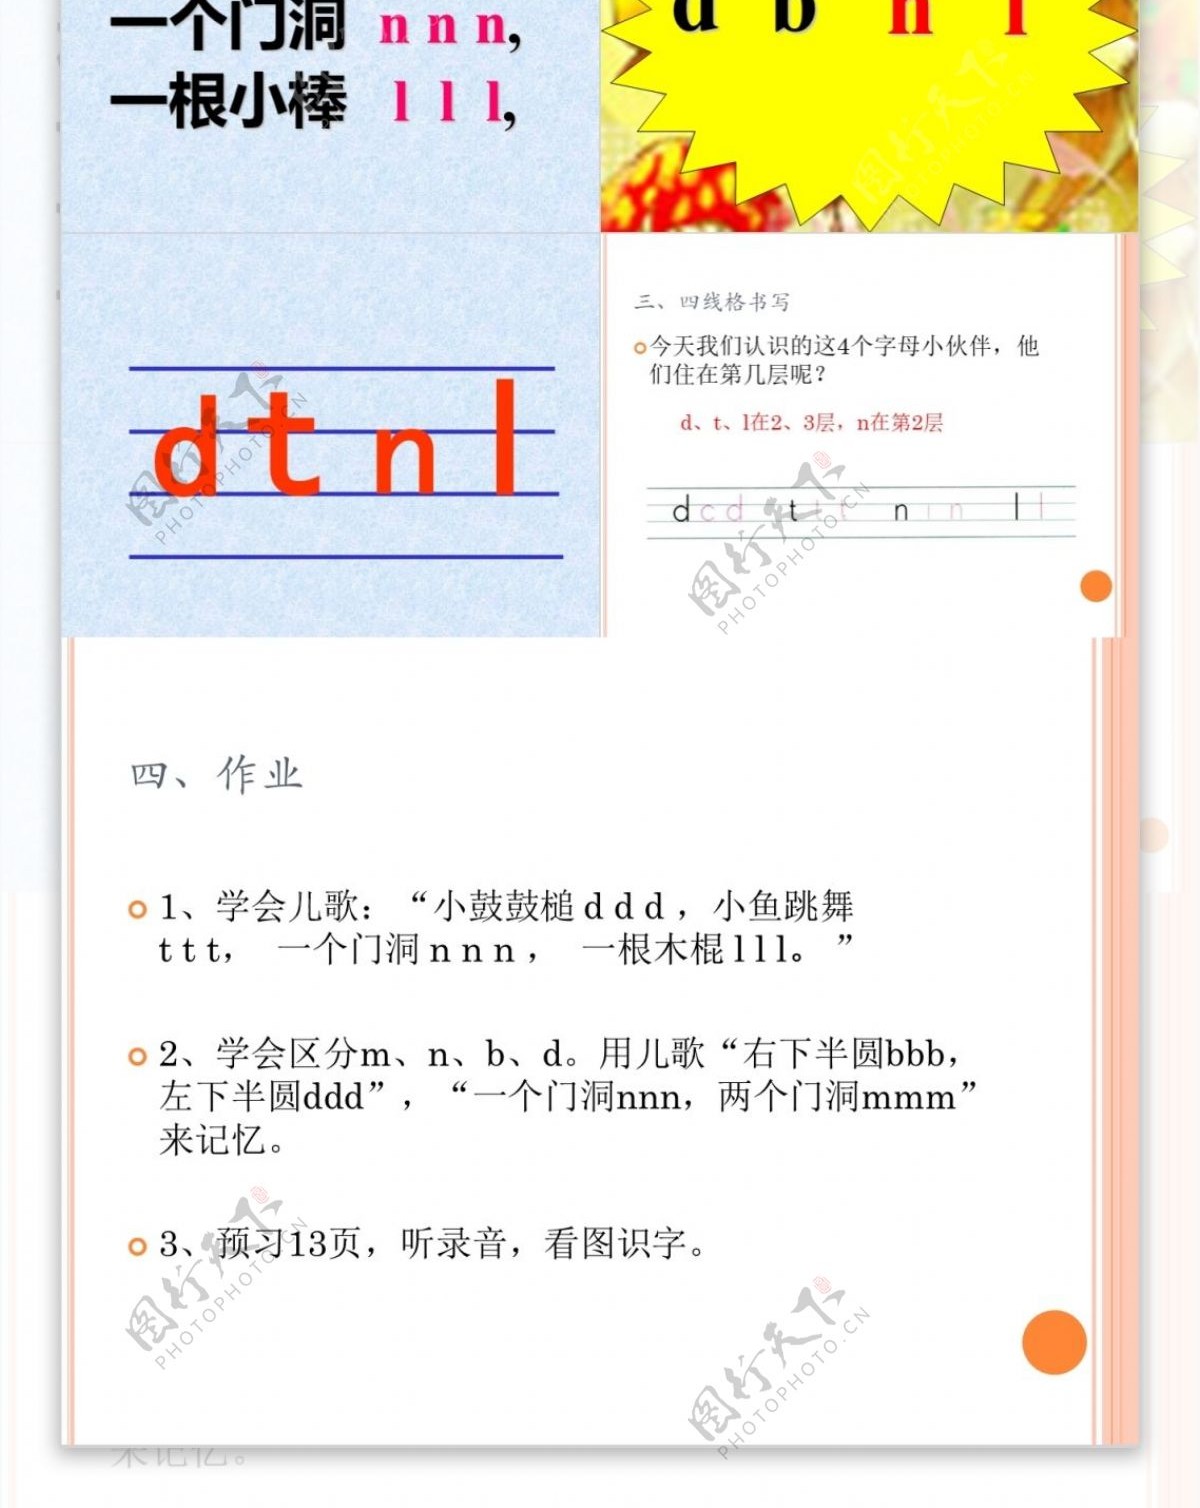 人教版小学一年级语文汉语拼音第四课dtnl课件